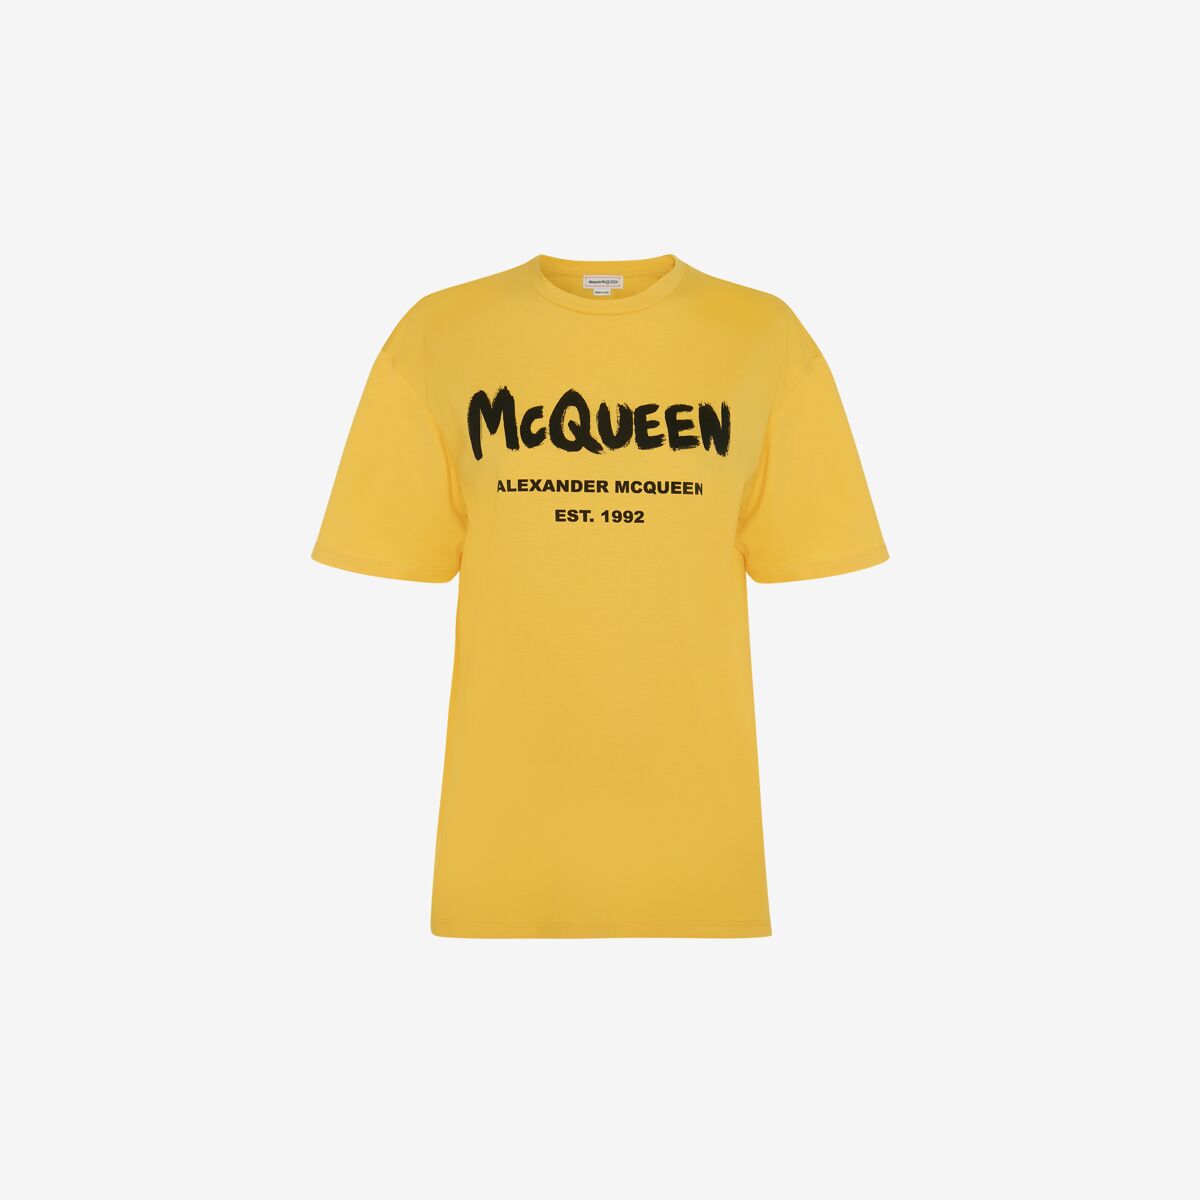 Alexander Mcqueen Mcqueen Graffiti T-shirt In Pop Yellow/black